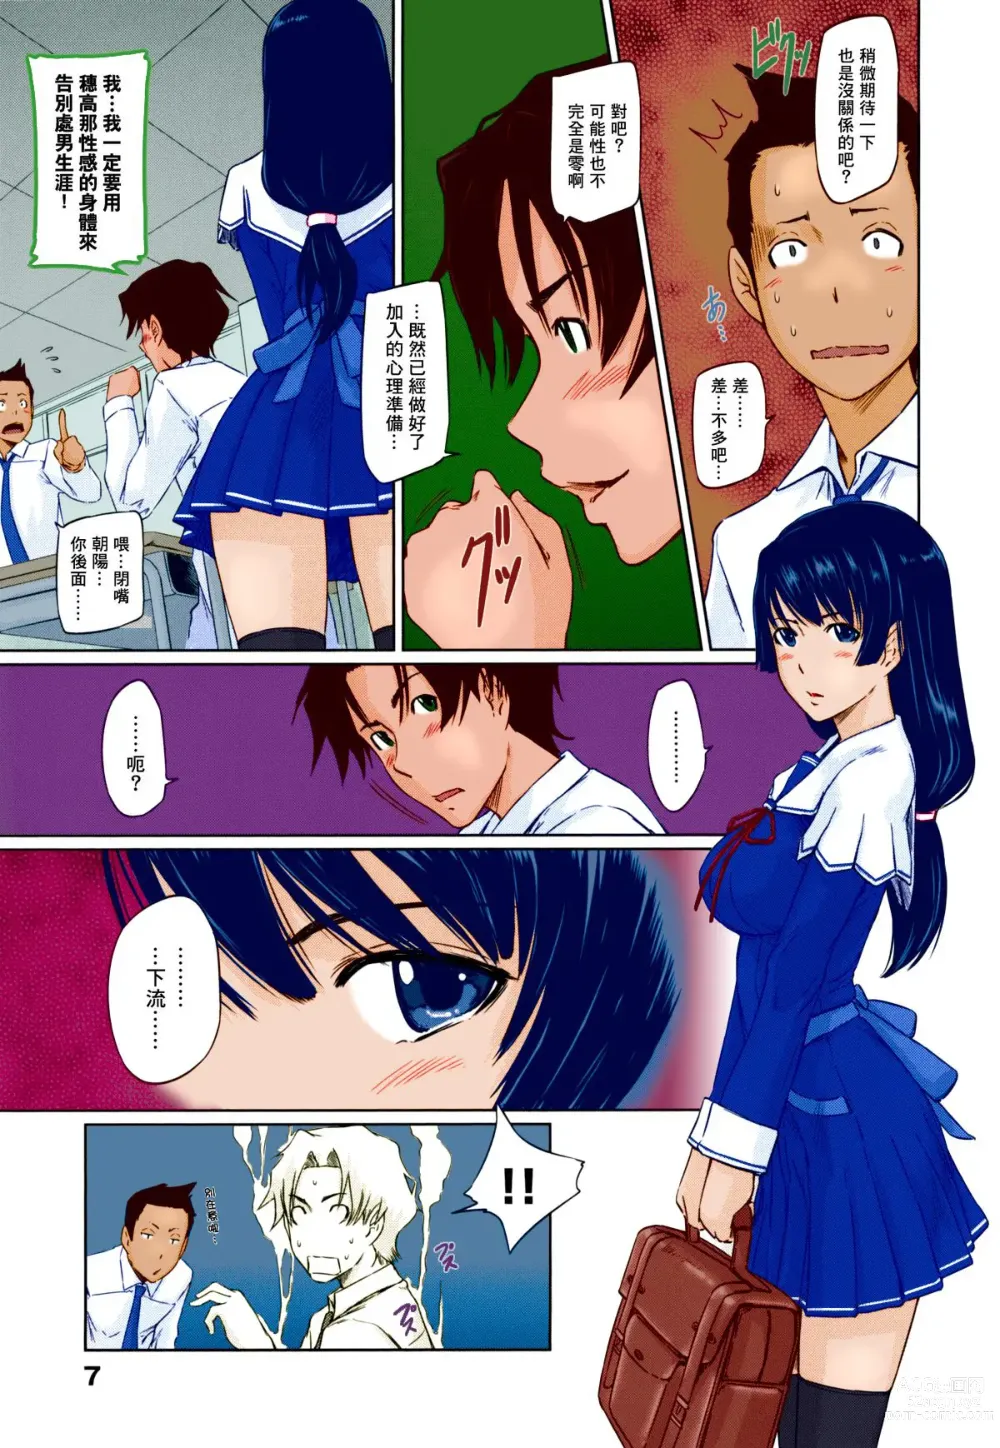 Page 12 of manga Suki ni nattara itchokusen!